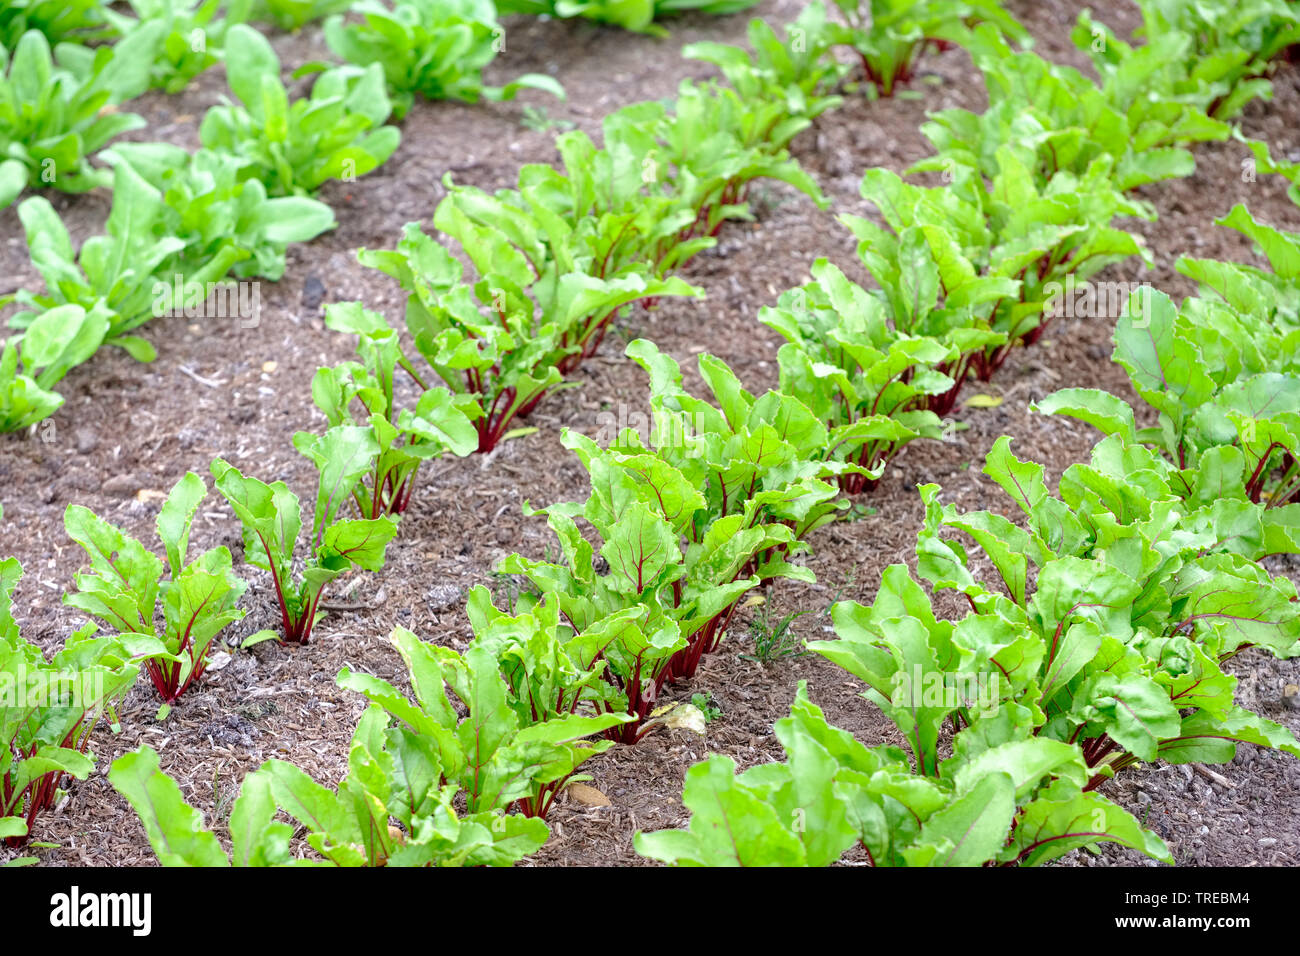 Rows of young beetroot Moneta seedlings (Beta vulgaris subsp. vulgaris) growing in late spring Stock Photo